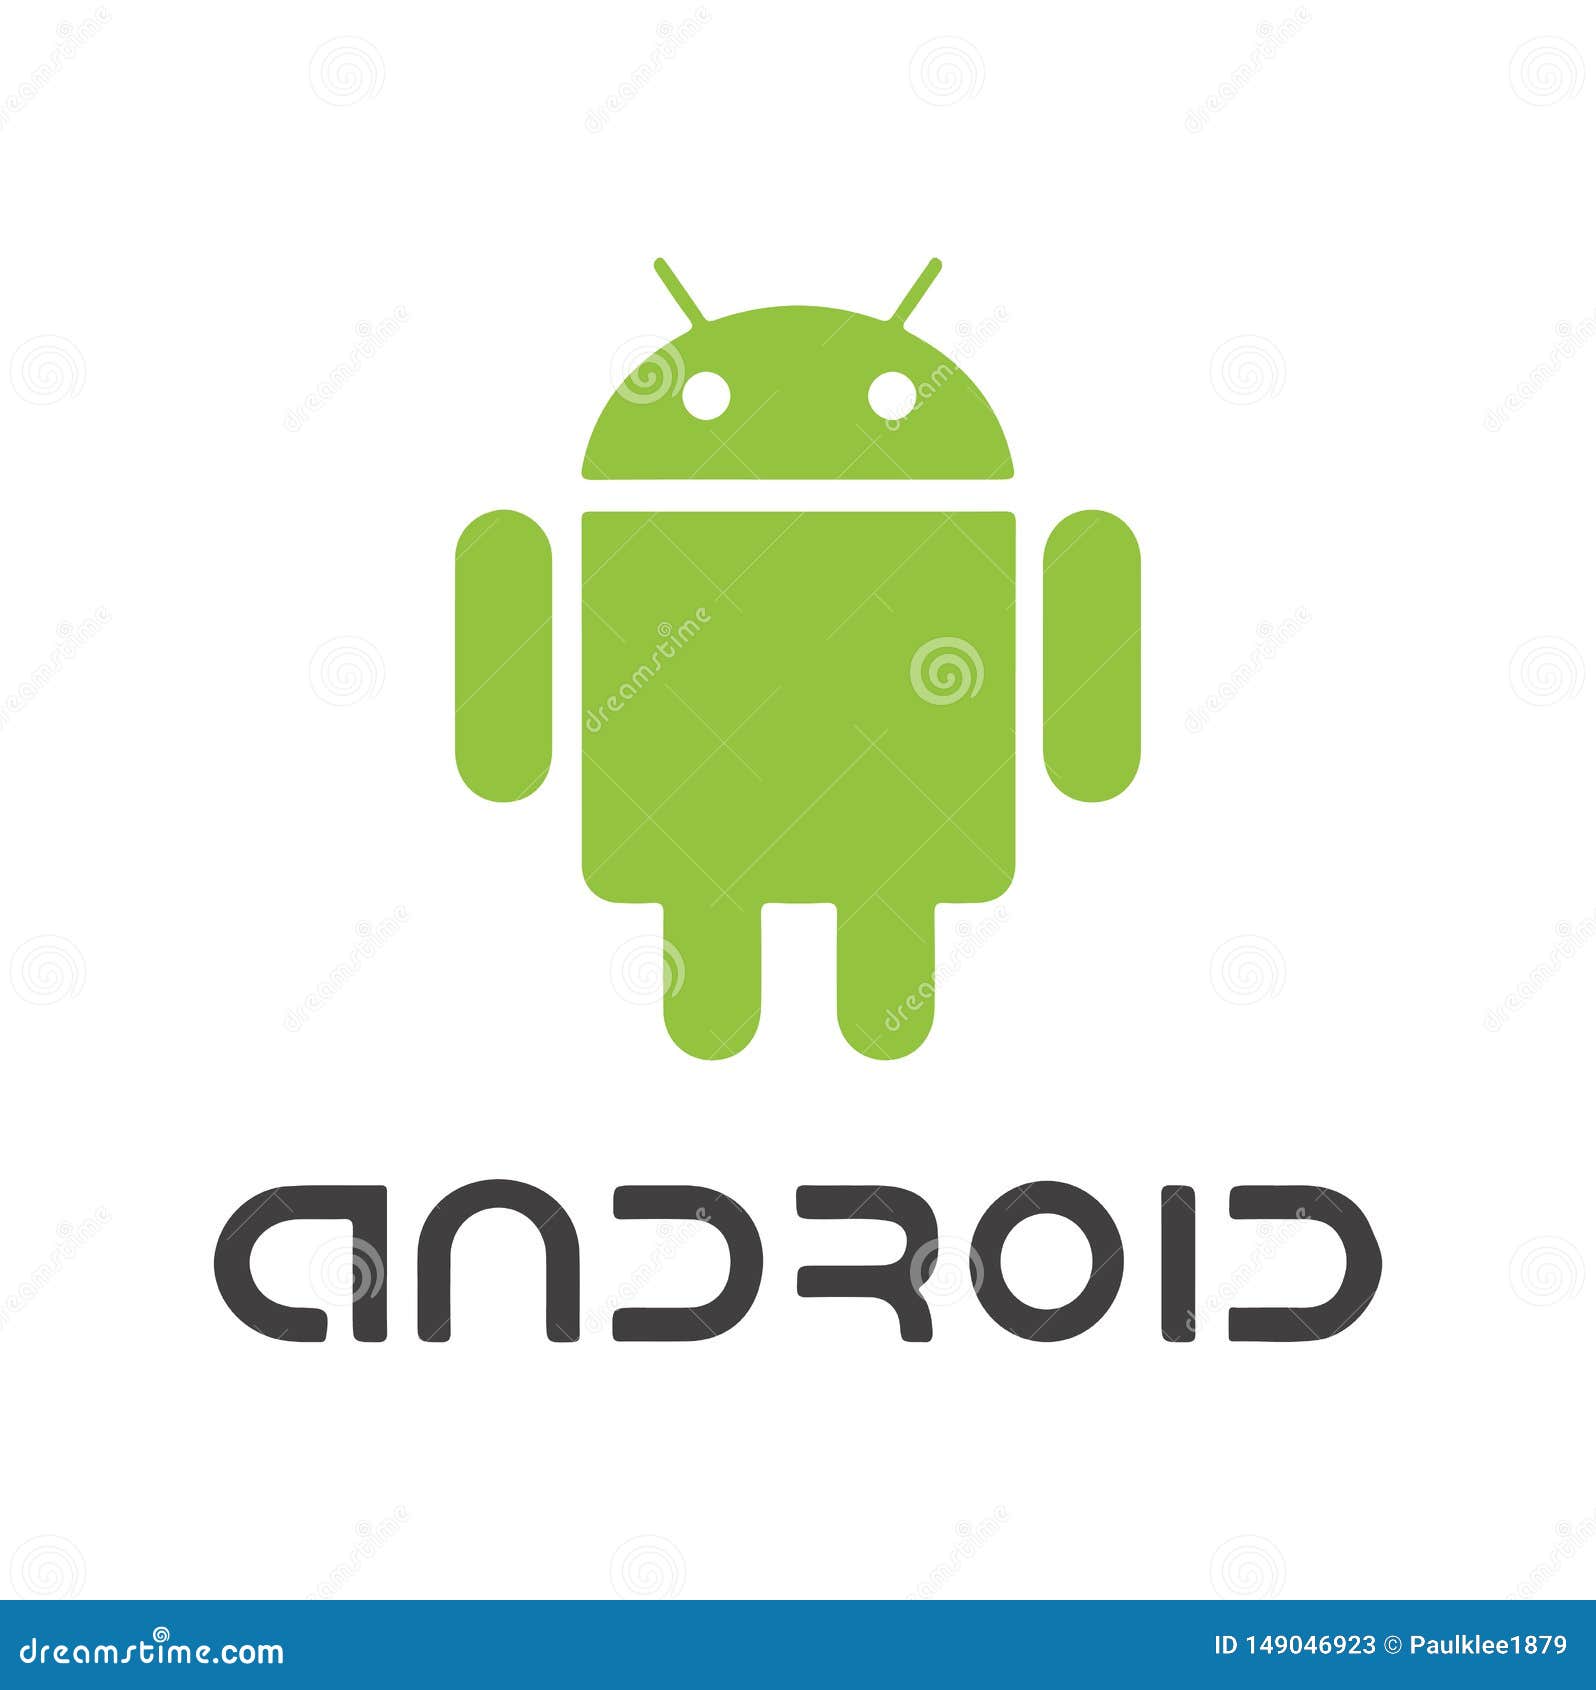 Vector Illustration của logo Android sẽ khiến bạn phấn khích với những đường nét tinh tế sắc sảo. Nhấp chuột vào hình ảnh liên quan và khám phá thêm những chi tiết tuyệt vời mà bạn chưa từng biết đến.